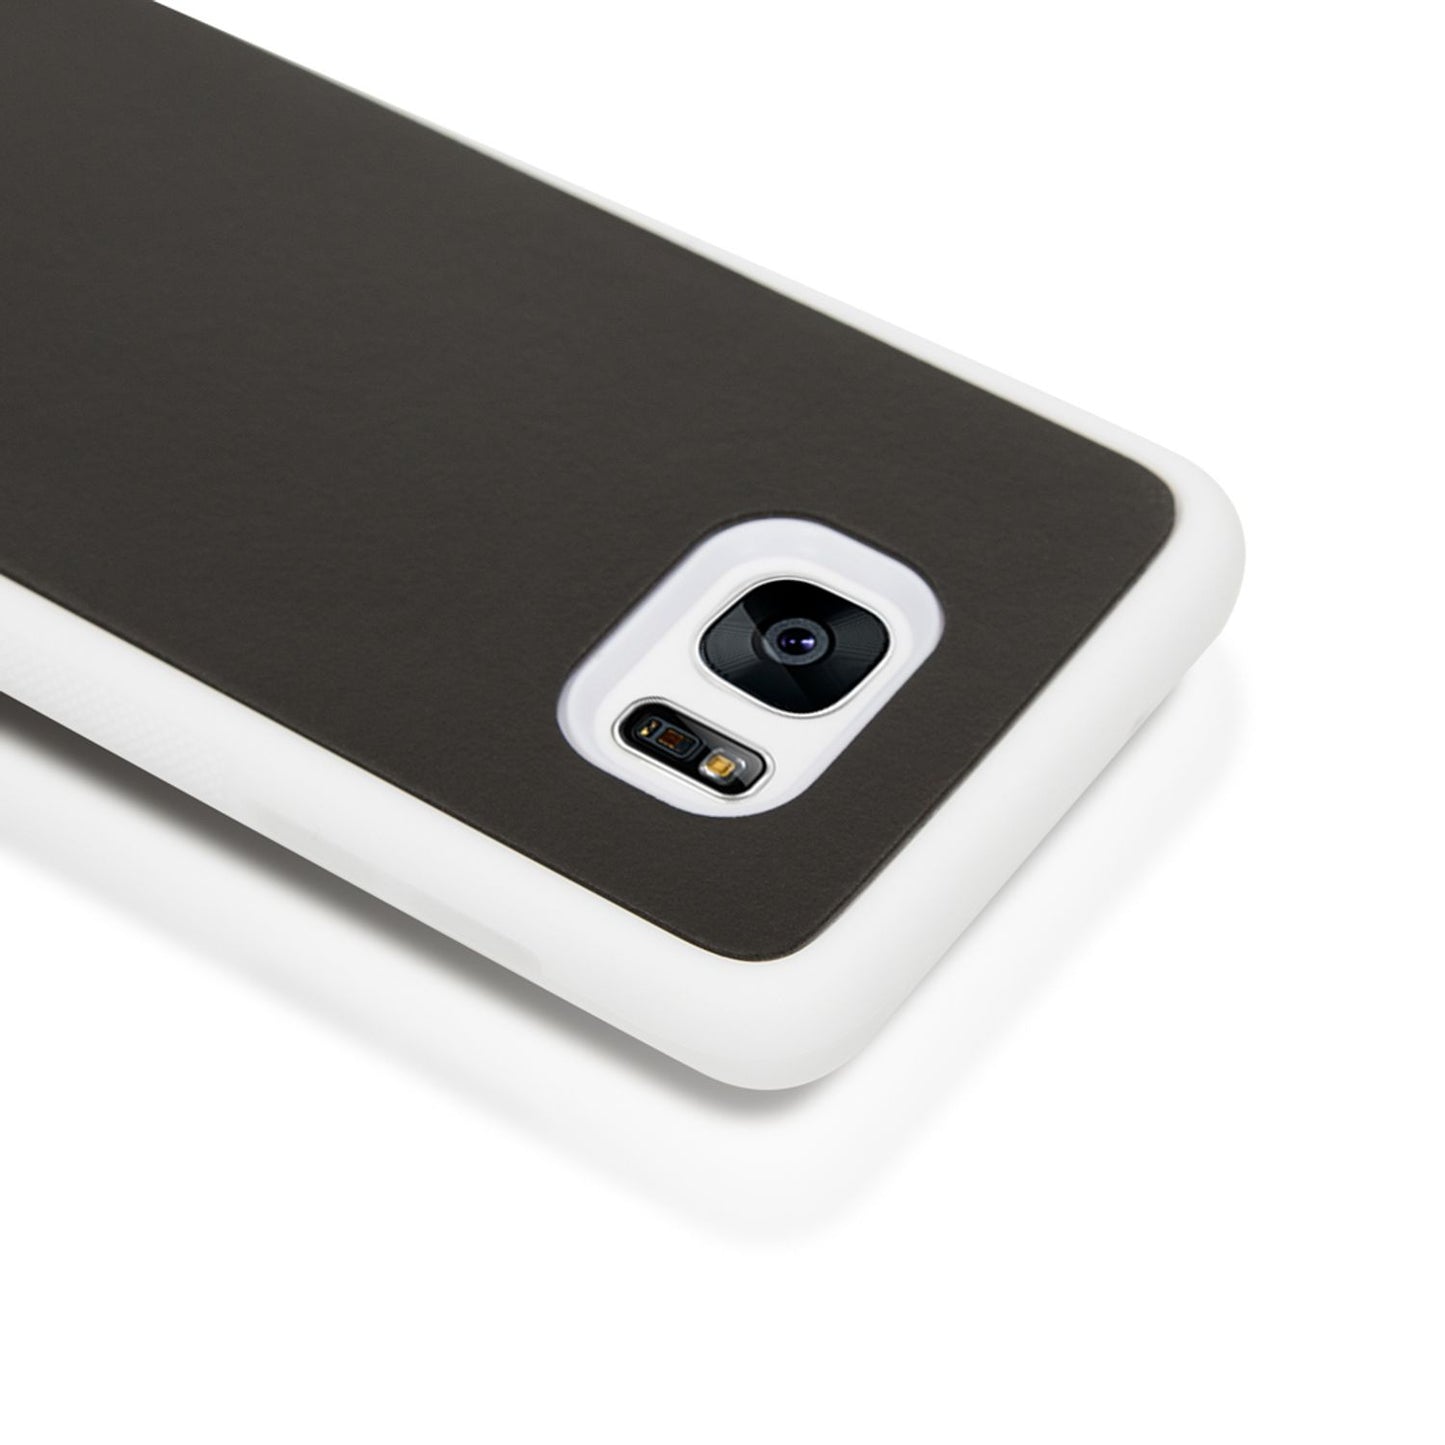 Samsung Galaxy S7 Edge Anti Gravity Case Handy Hülle von NALIA Etui Selbstklebend